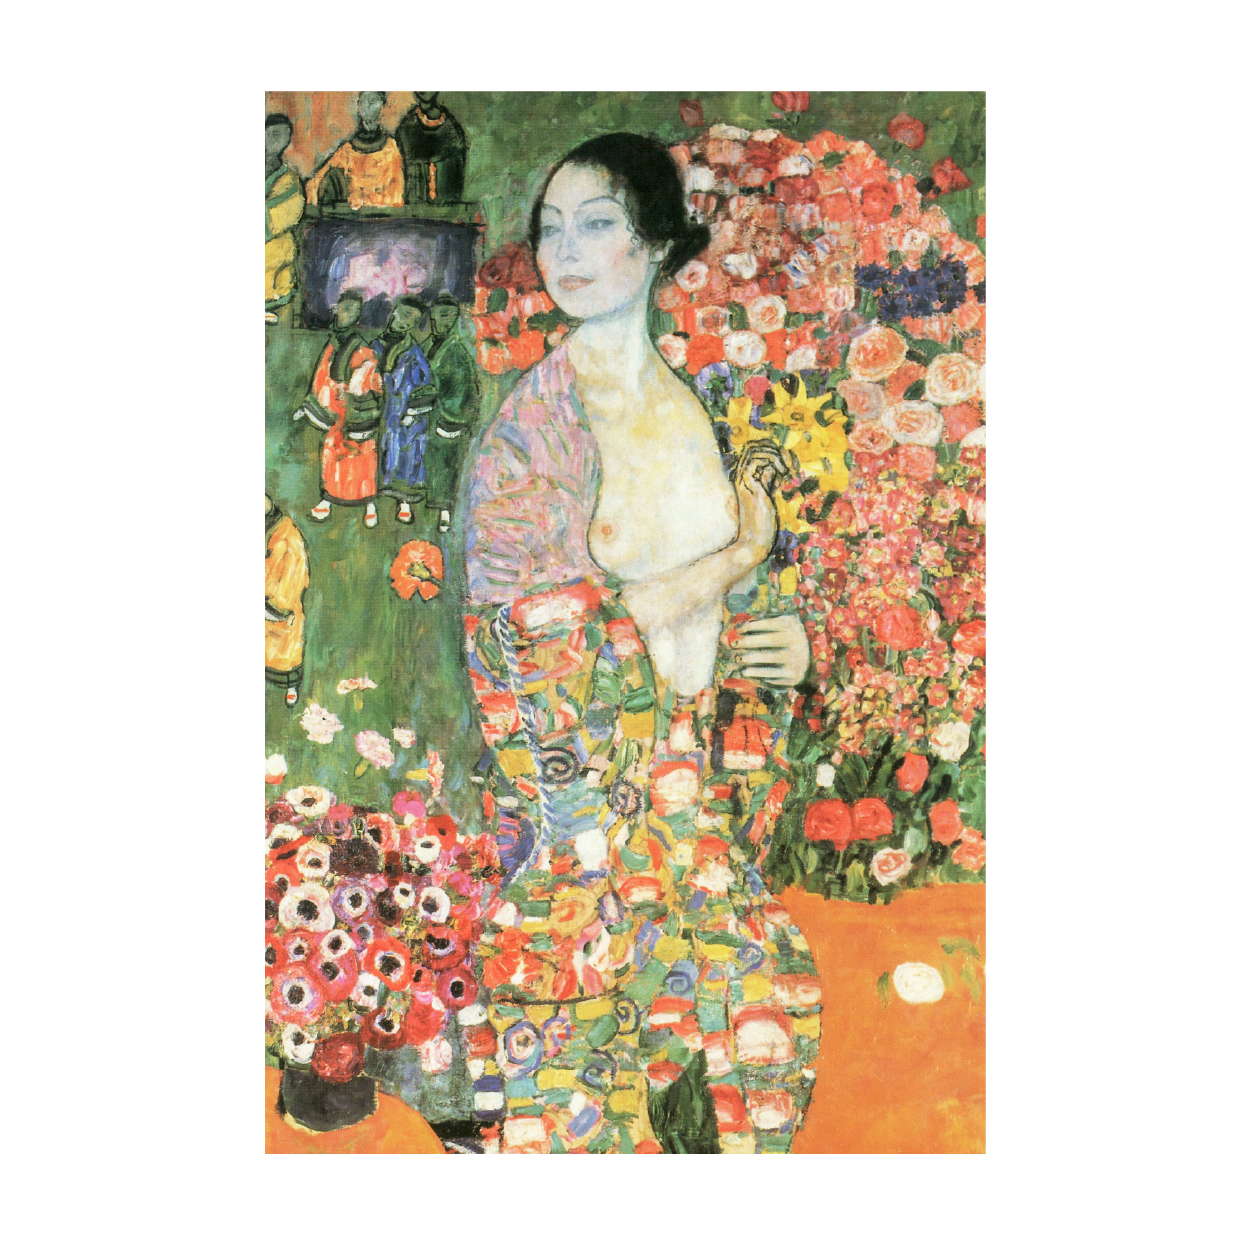 Gustav Klimt: "The Dancer"